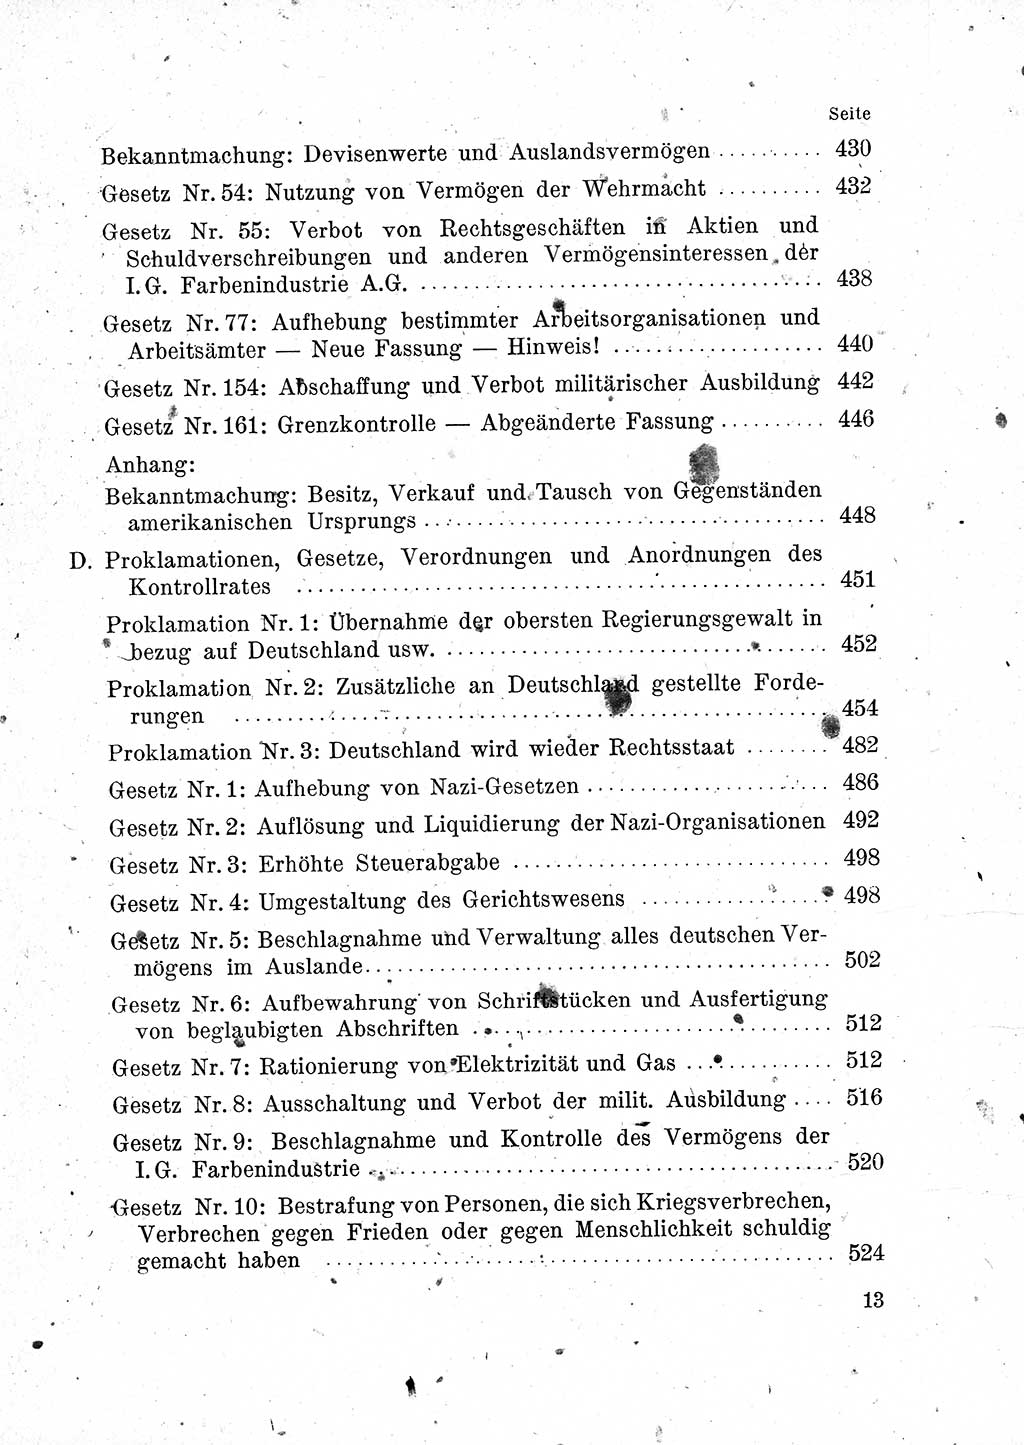 Das Recht der Besatzungsmacht (Deutschland), Proklamationen, Deklerationen, Verordnungen, Gesetze und Bekanntmachungen 1947, Seite 13 (R. Bes. Dtl. 1947, S. 13)